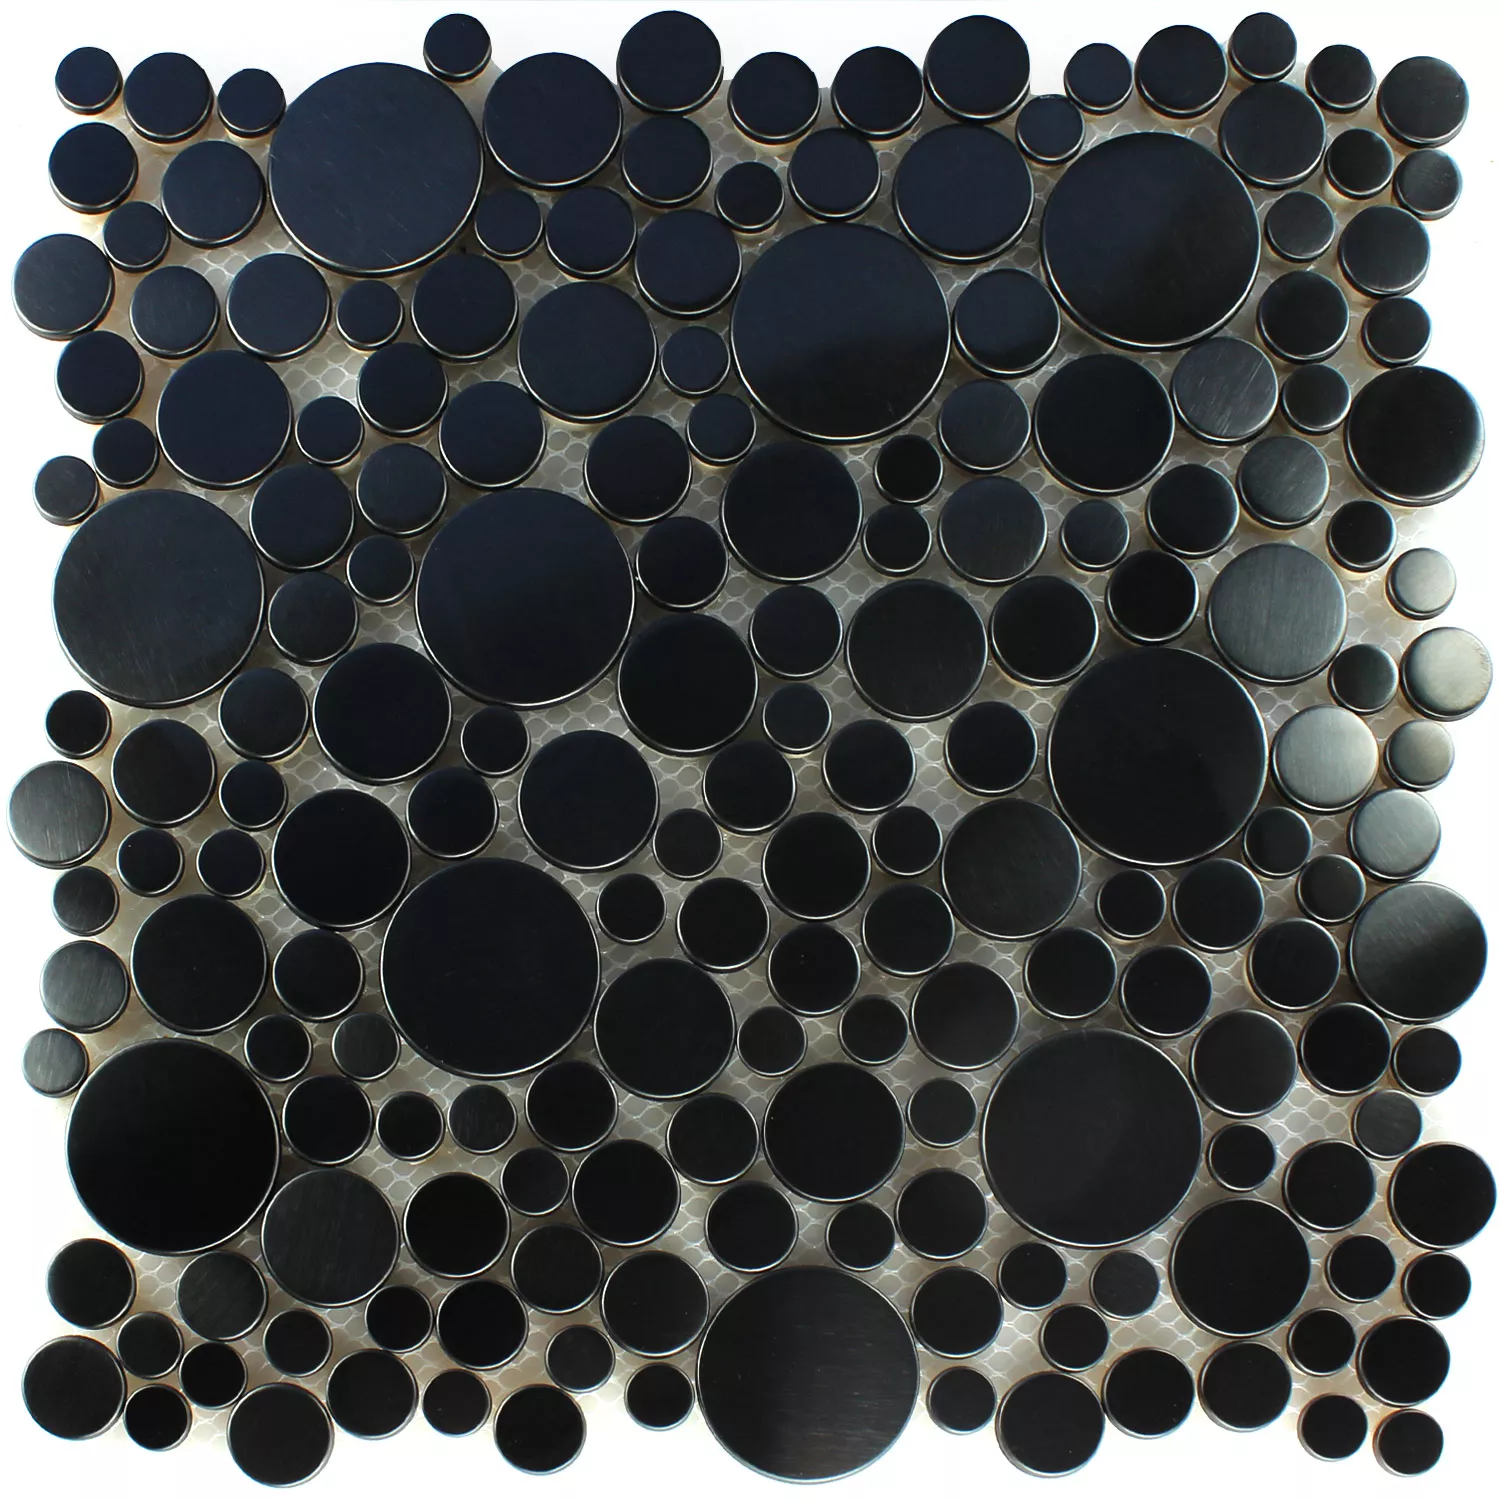 Muster von Mosaikfliesen Edelstahl Metall Flusskiesel Design Black